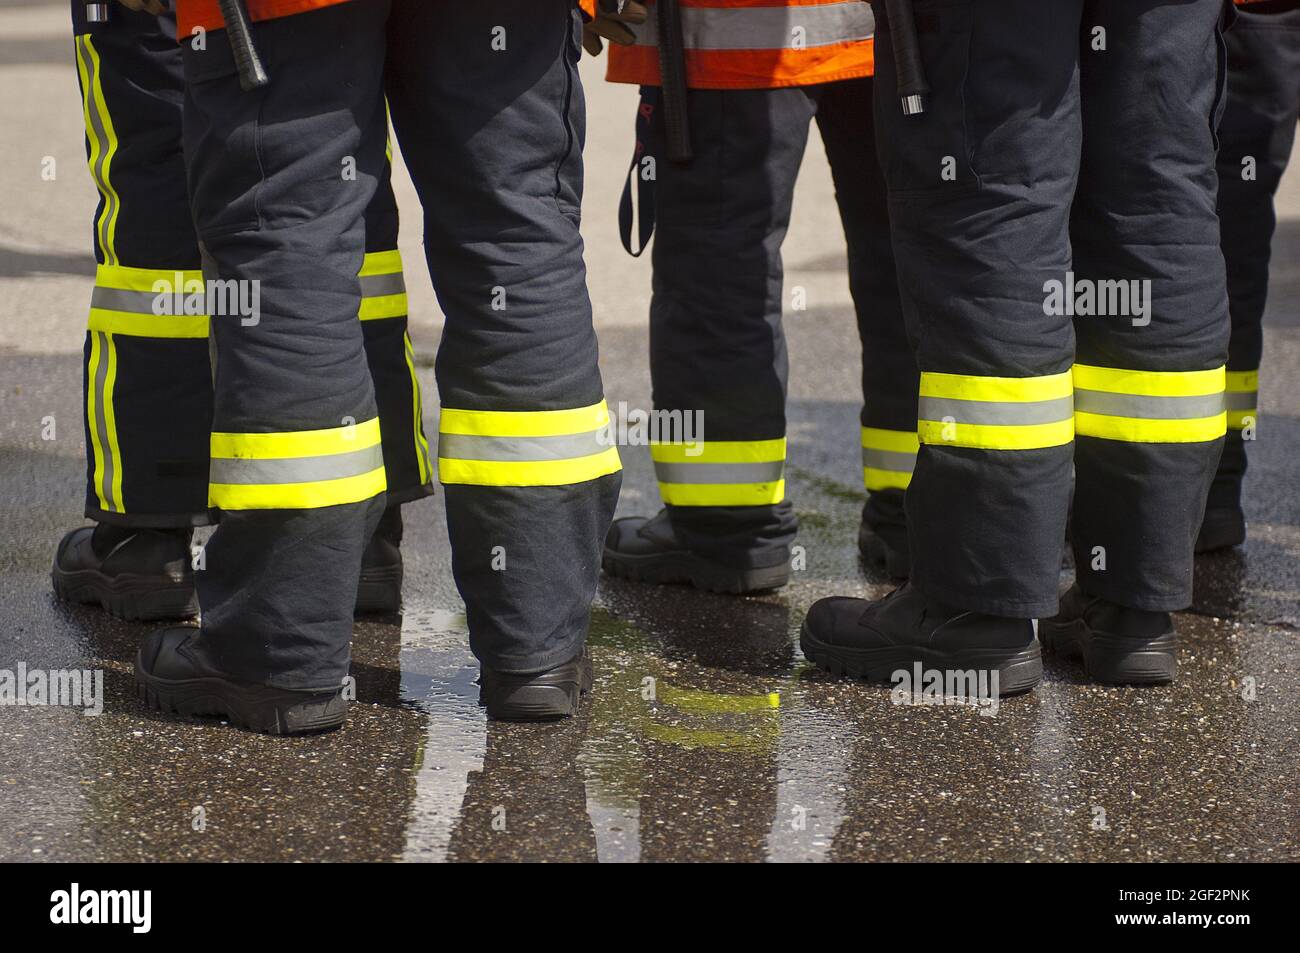 Pompiers debout ensemble, bandes rétroréfléchissantes et peinture jaune fluorescent sur leurs jambes de pantalon , Allemagne Banque D'Images